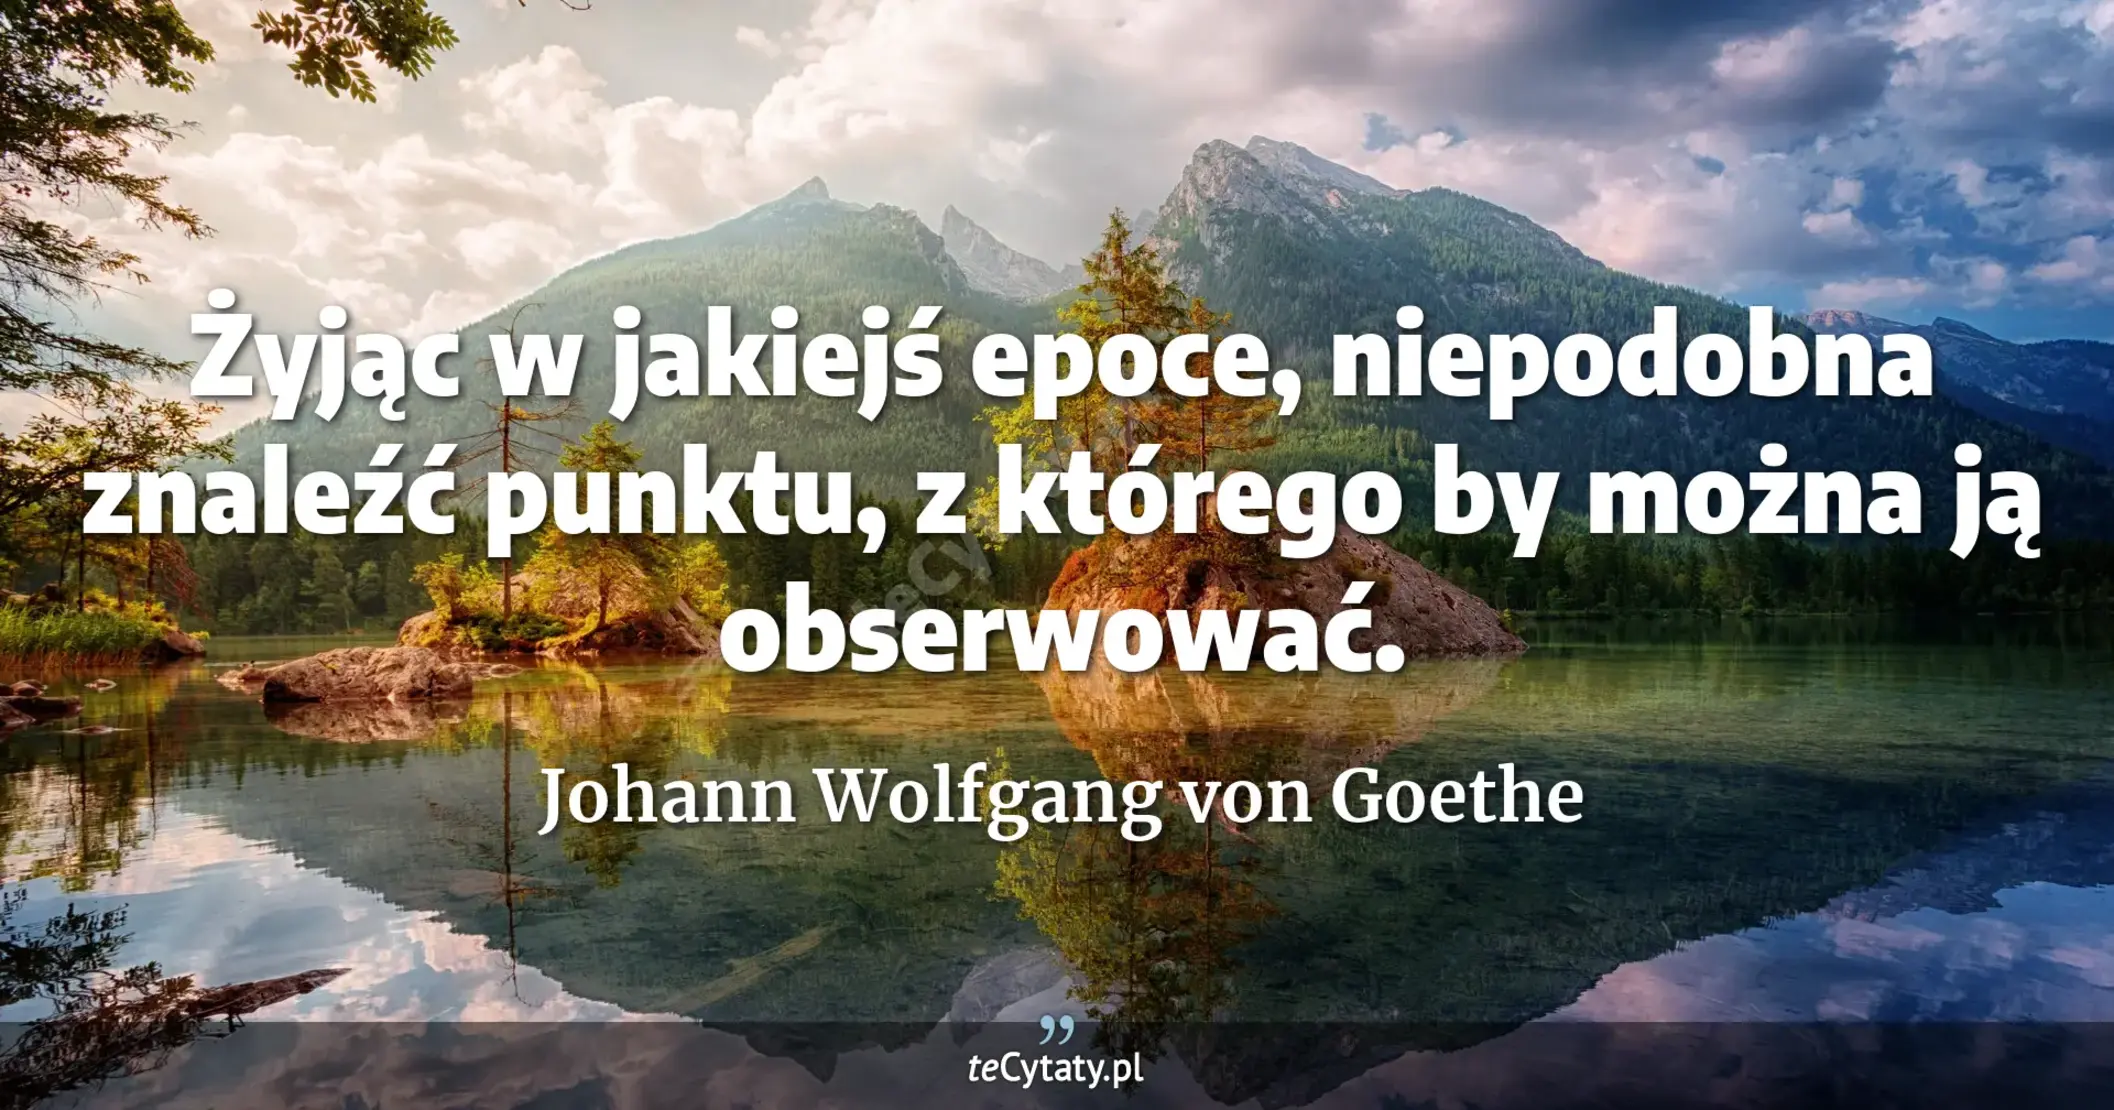 Żyjąc w jakiejś epoce, niepodobna znaleźć punktu, z którego by można ją obserwować. - Johann Wolfgang von Goethe